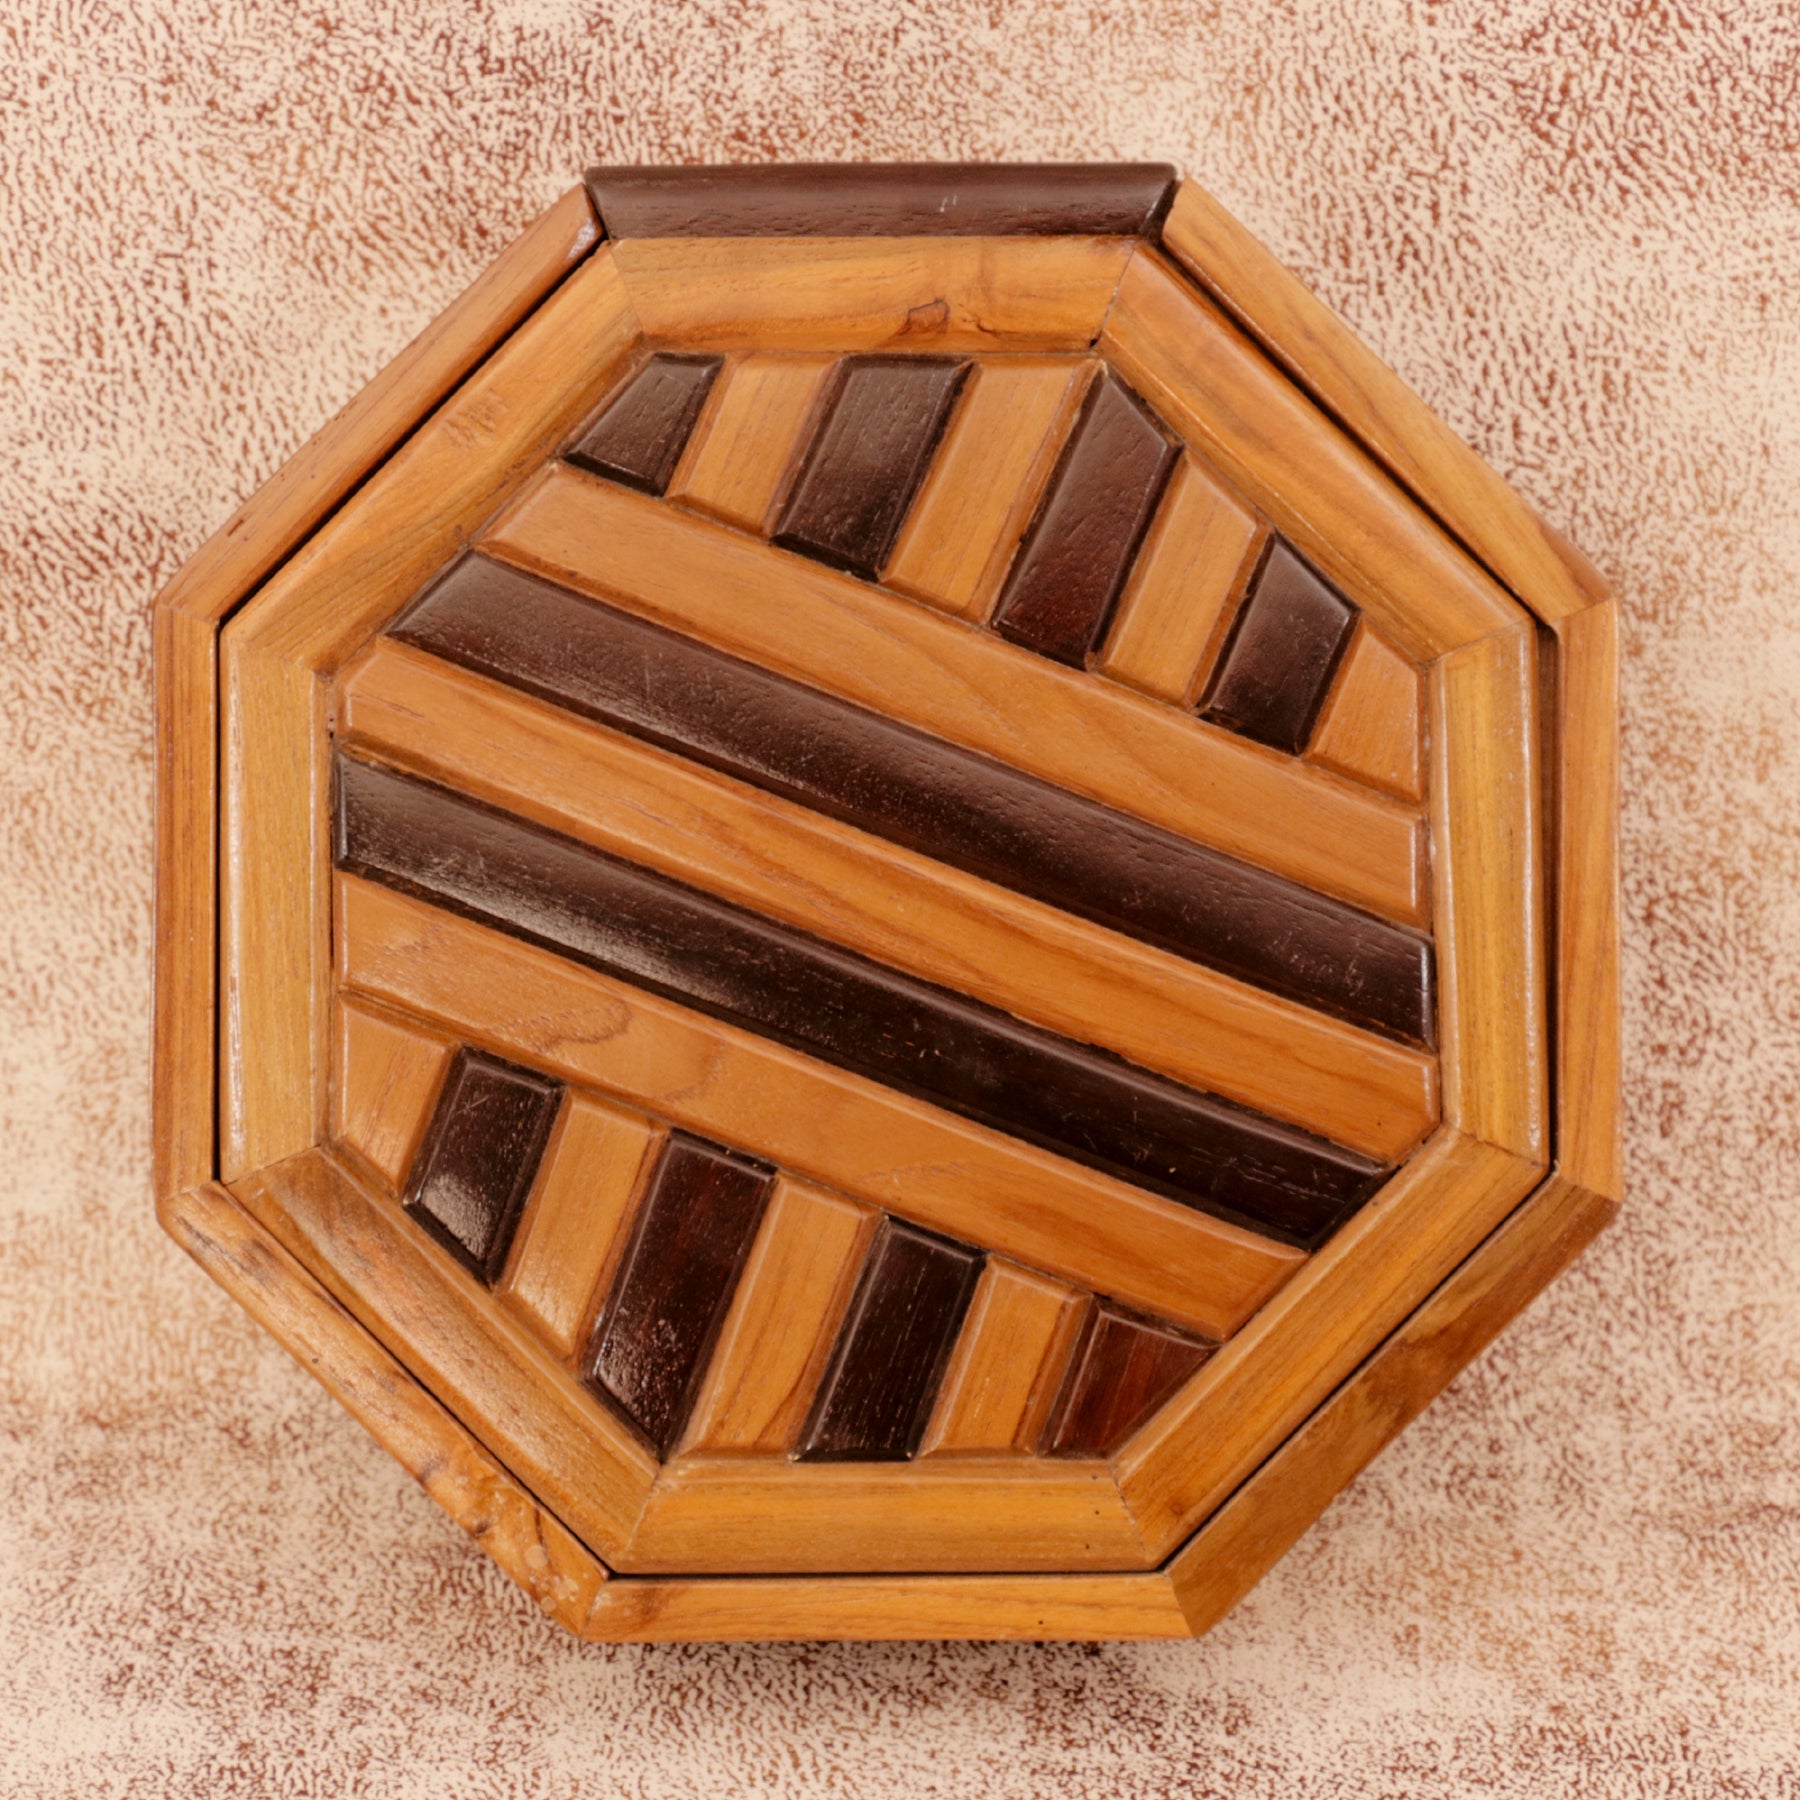 Contemporary Hexagon Box Wooden Box